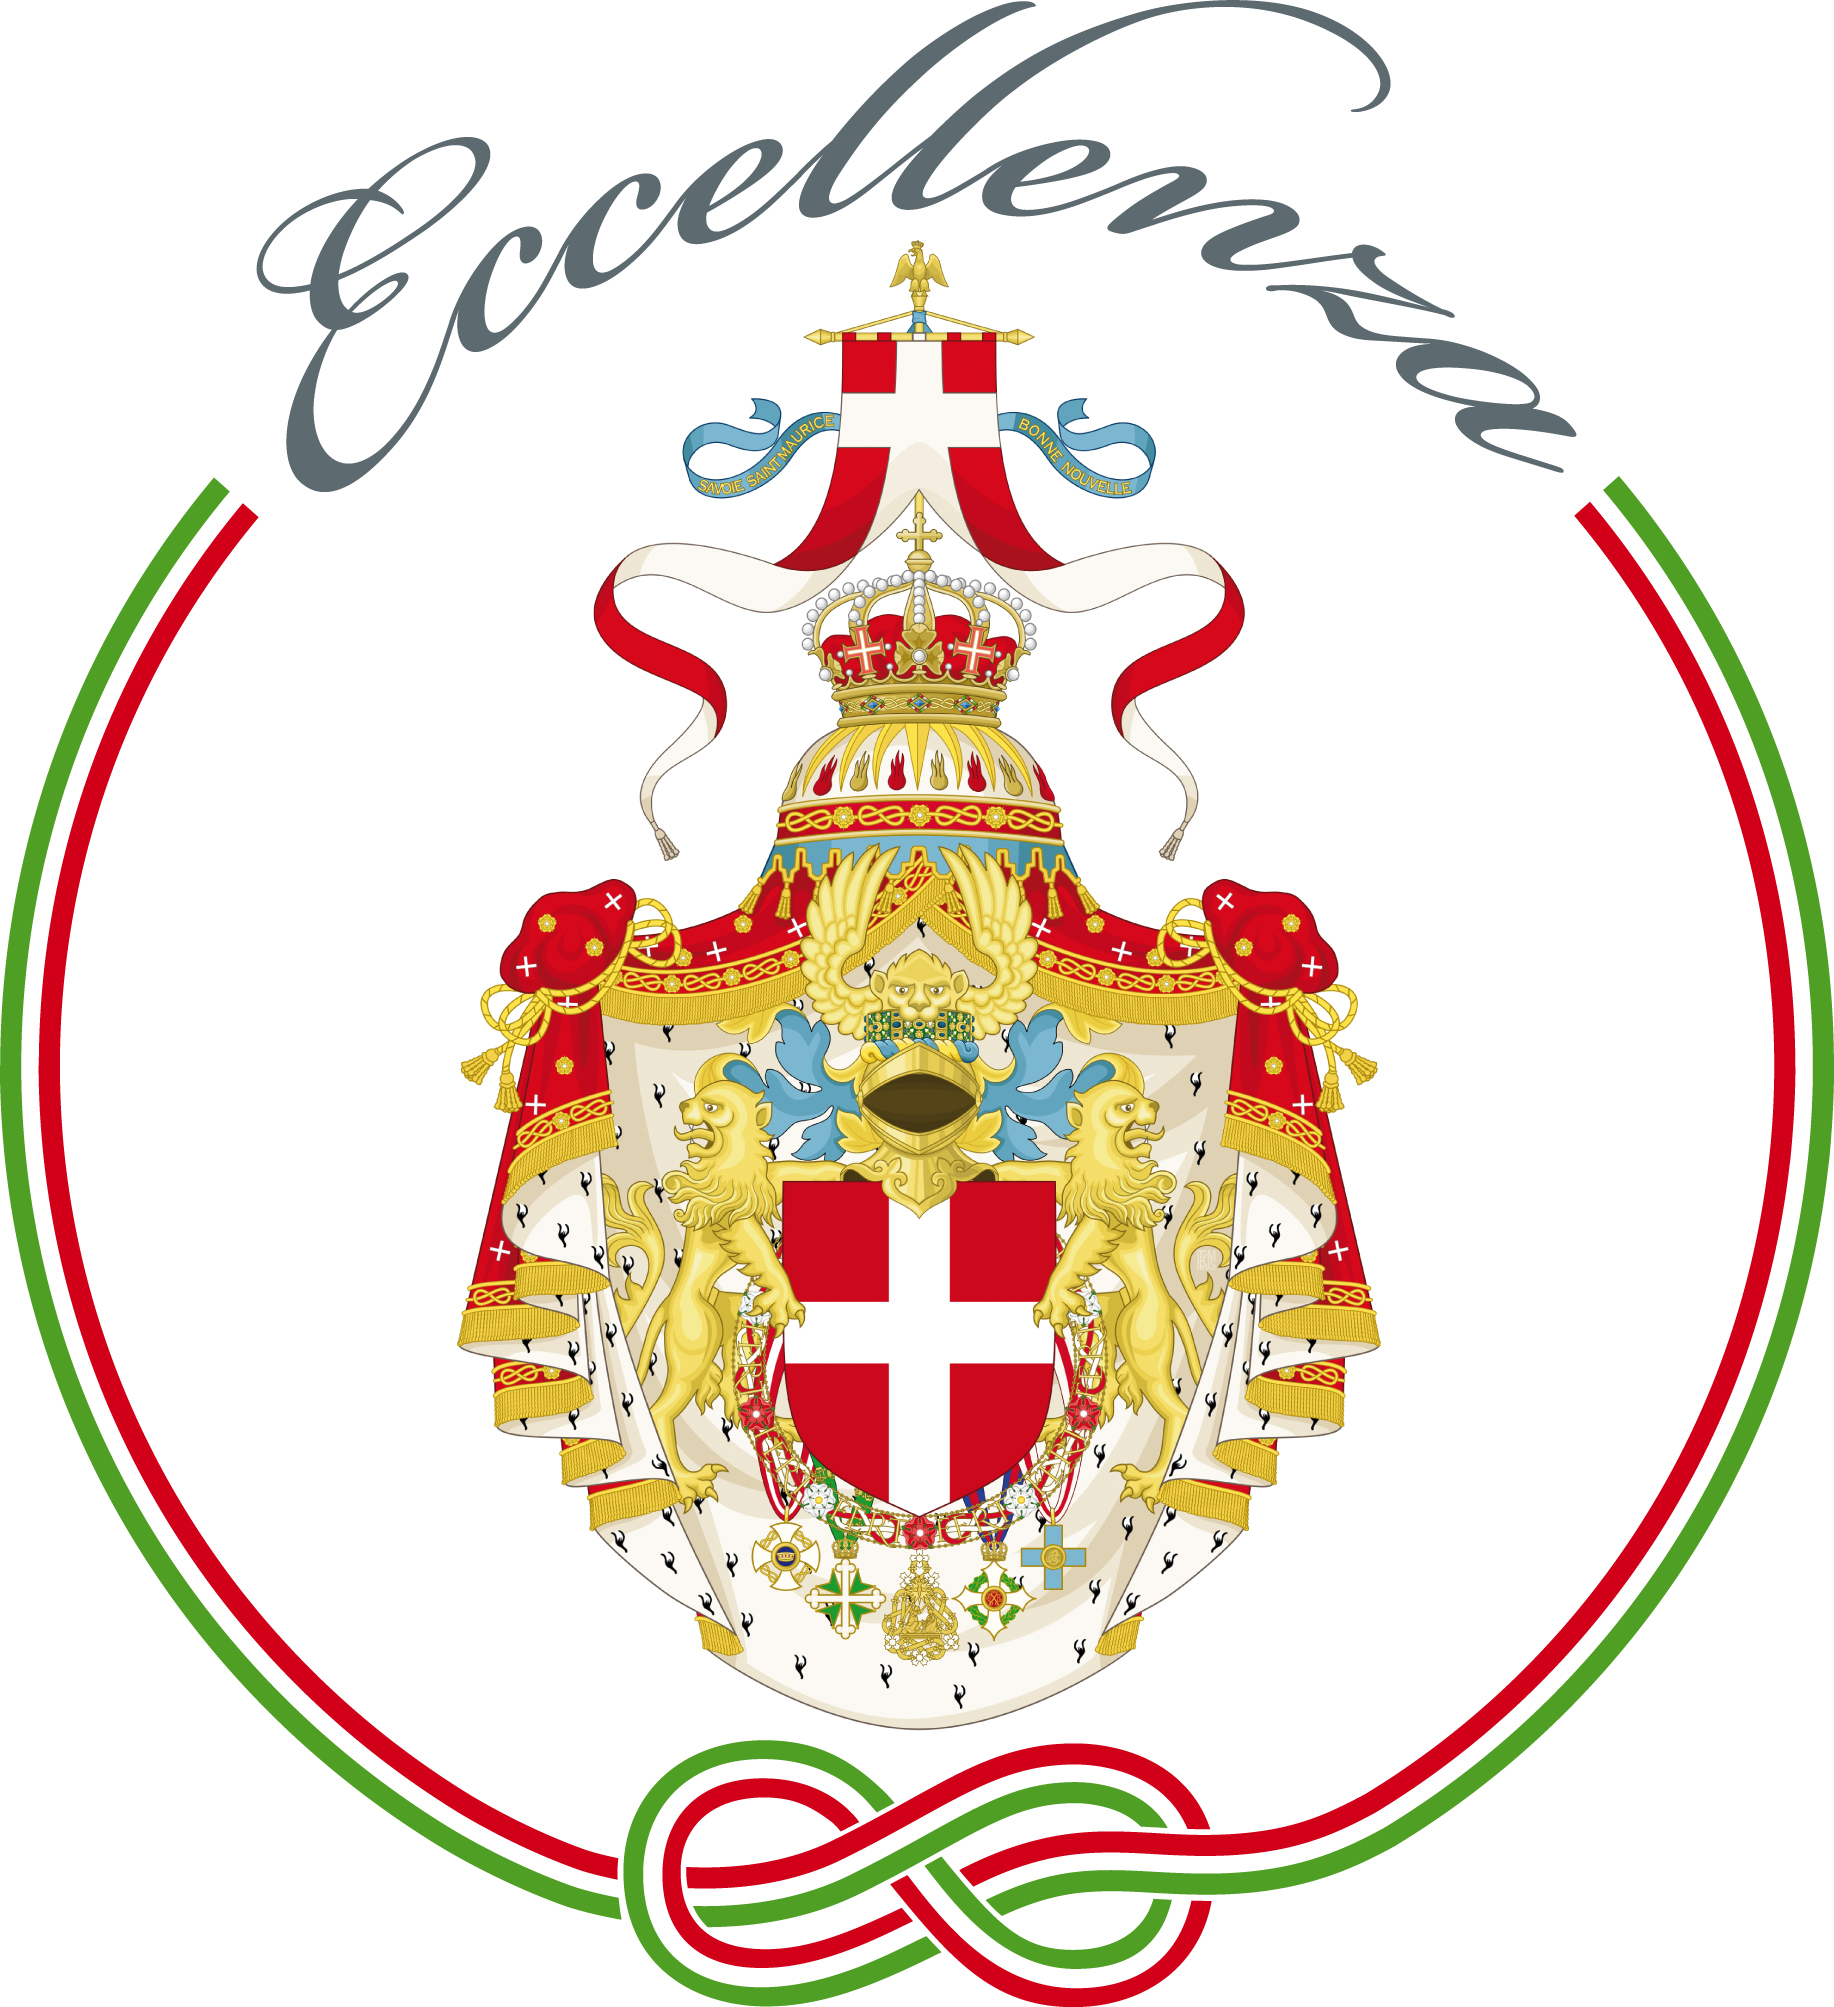 Certificazione Eccellenza Italiana - Storicità Aziendale